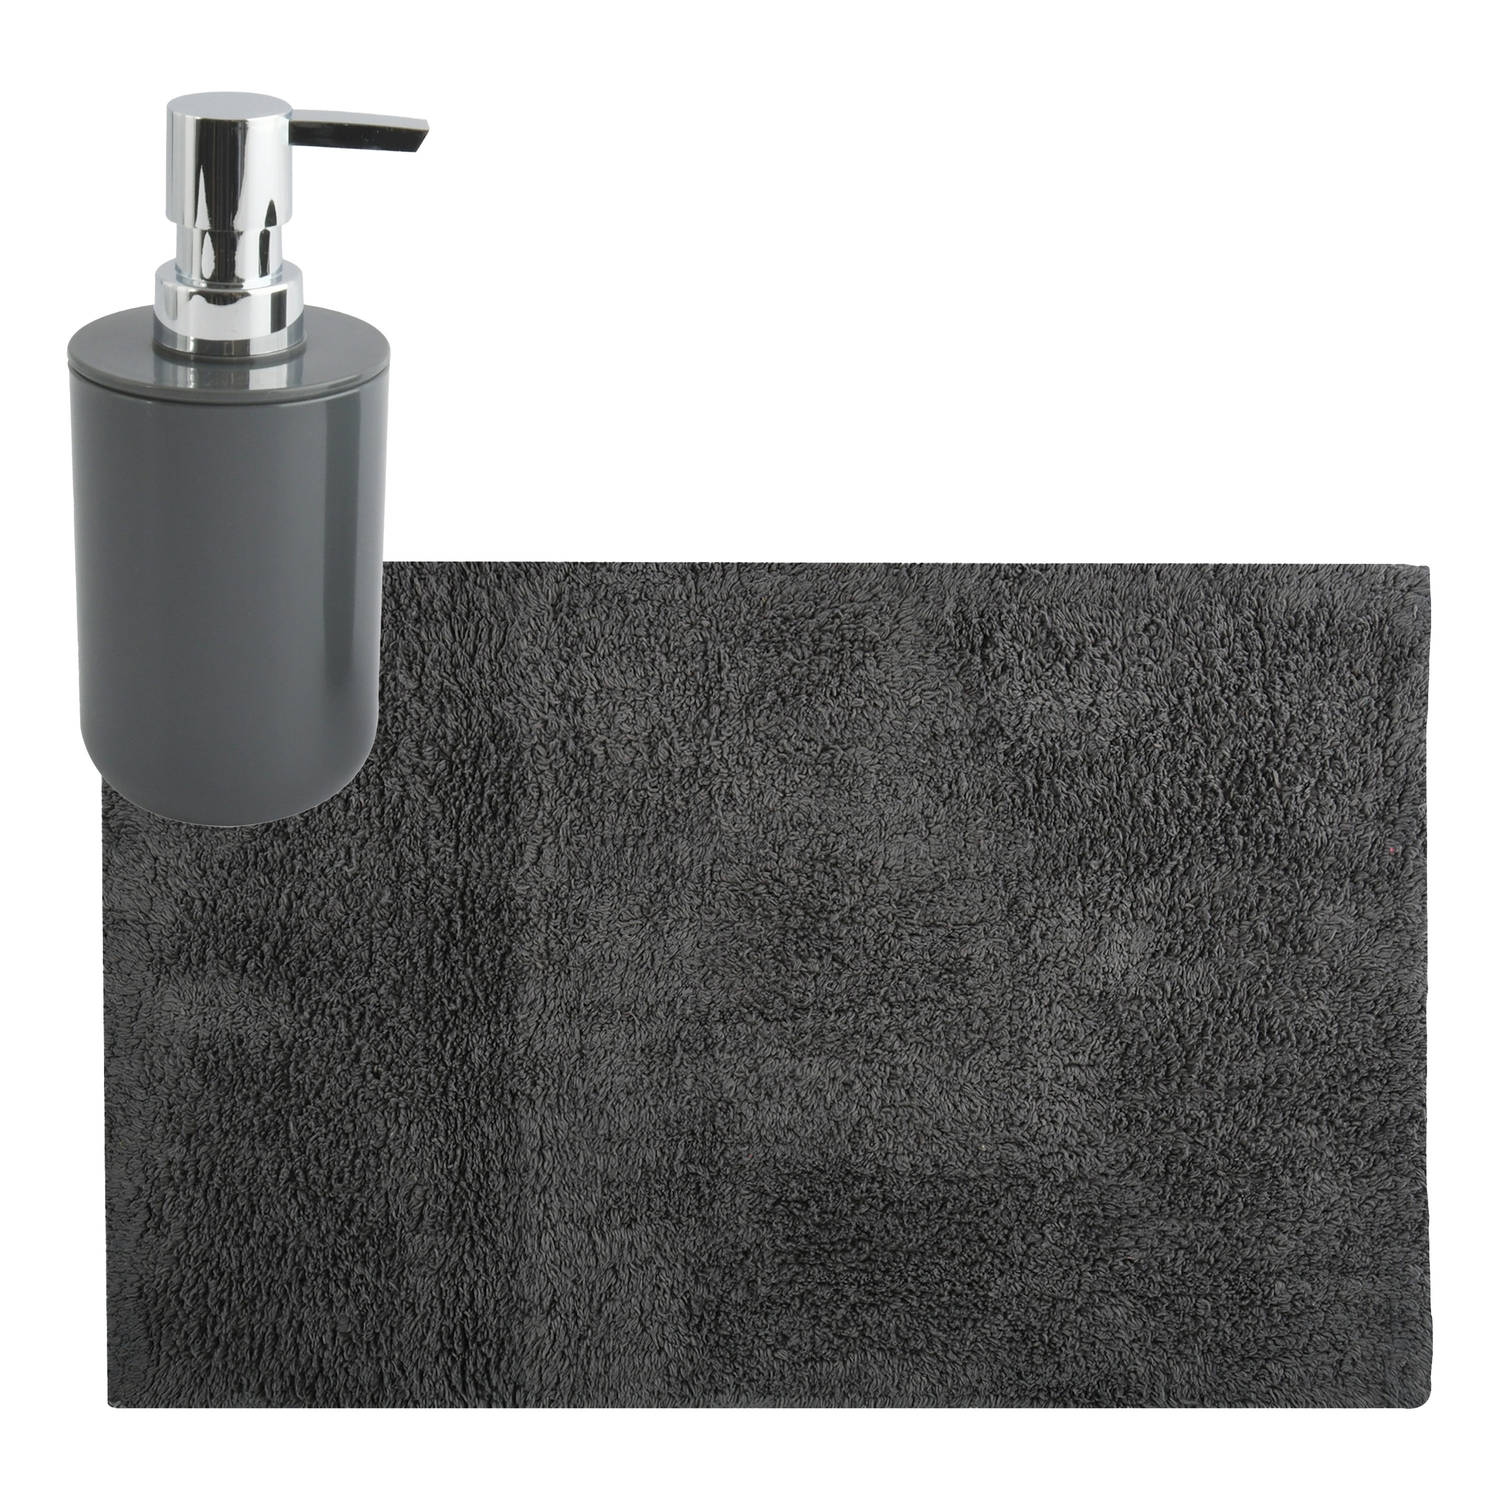 MSV badkamer droogloop mat-tapijt 40 x 60 cm met zelfde kleur zeeppompje 260 ml donkergrijs Badmatje